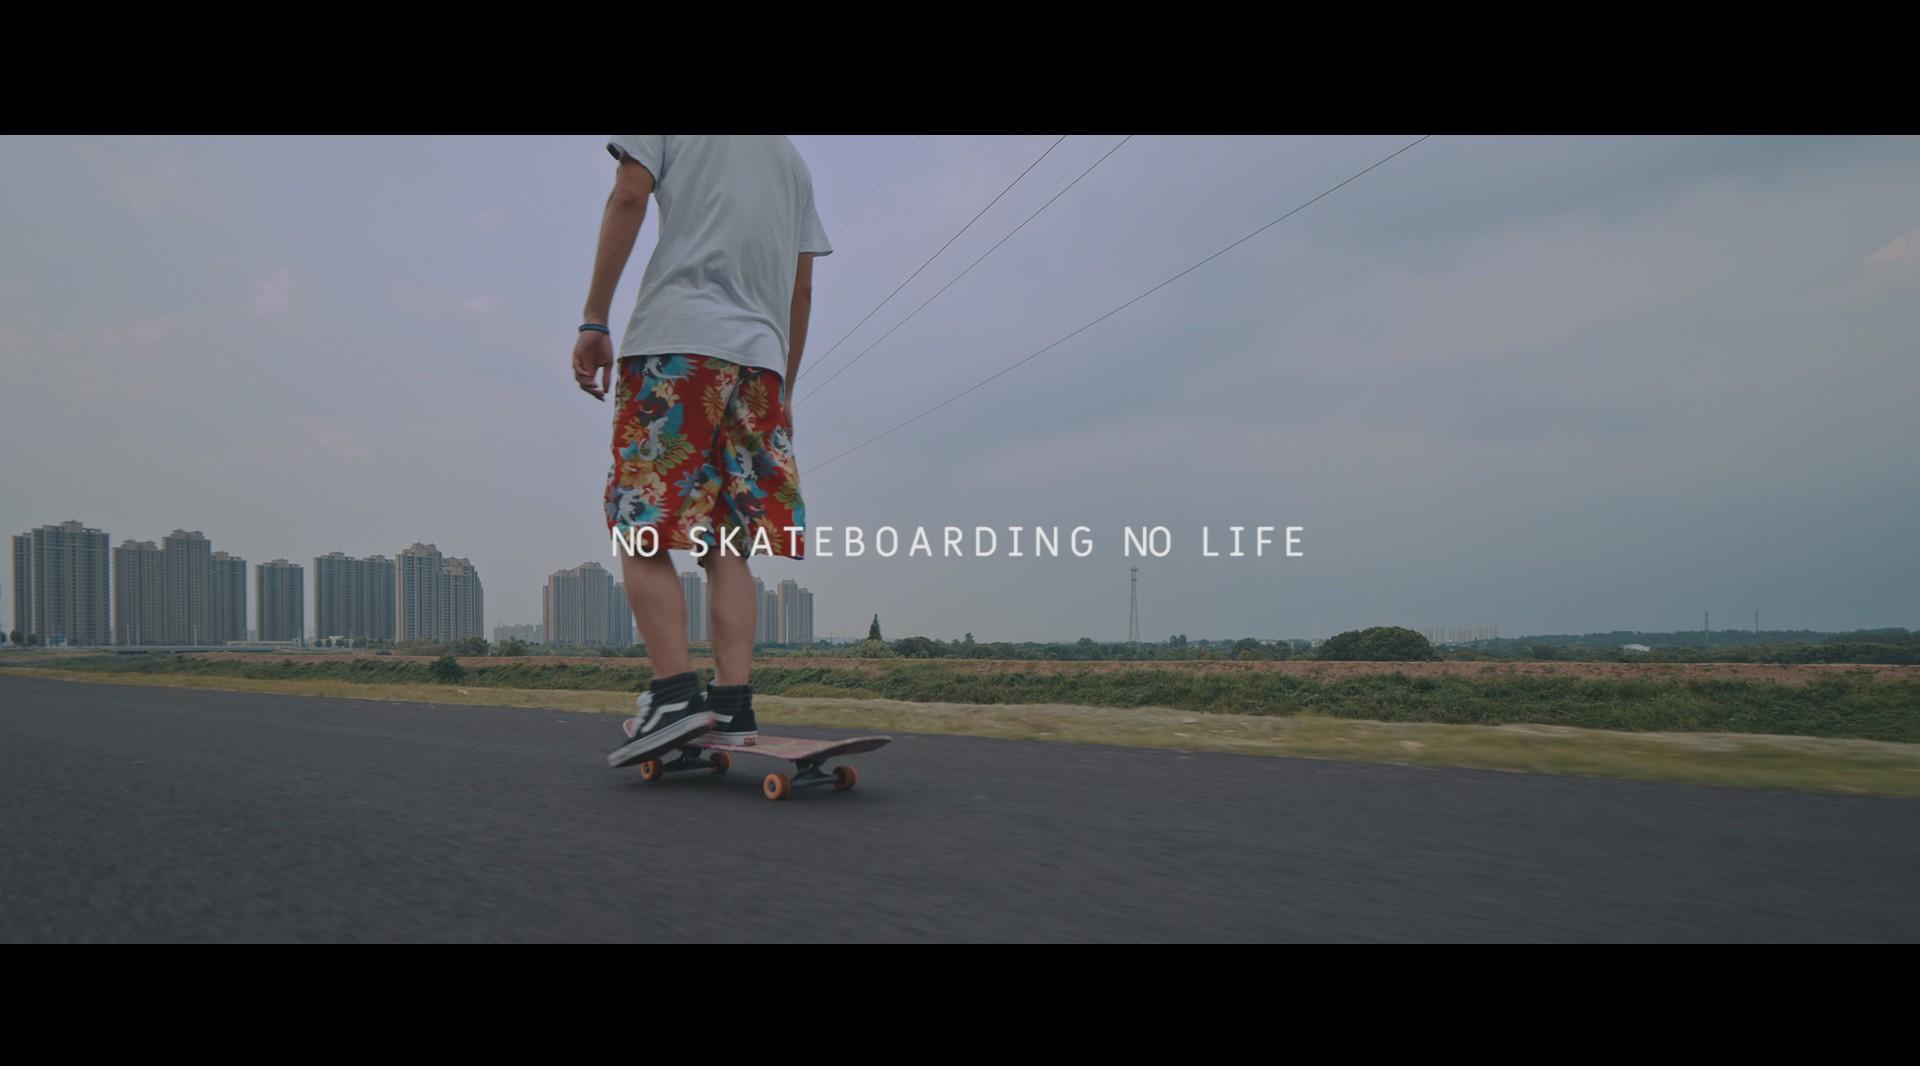 NO SKATEBOARDING NO LIFE